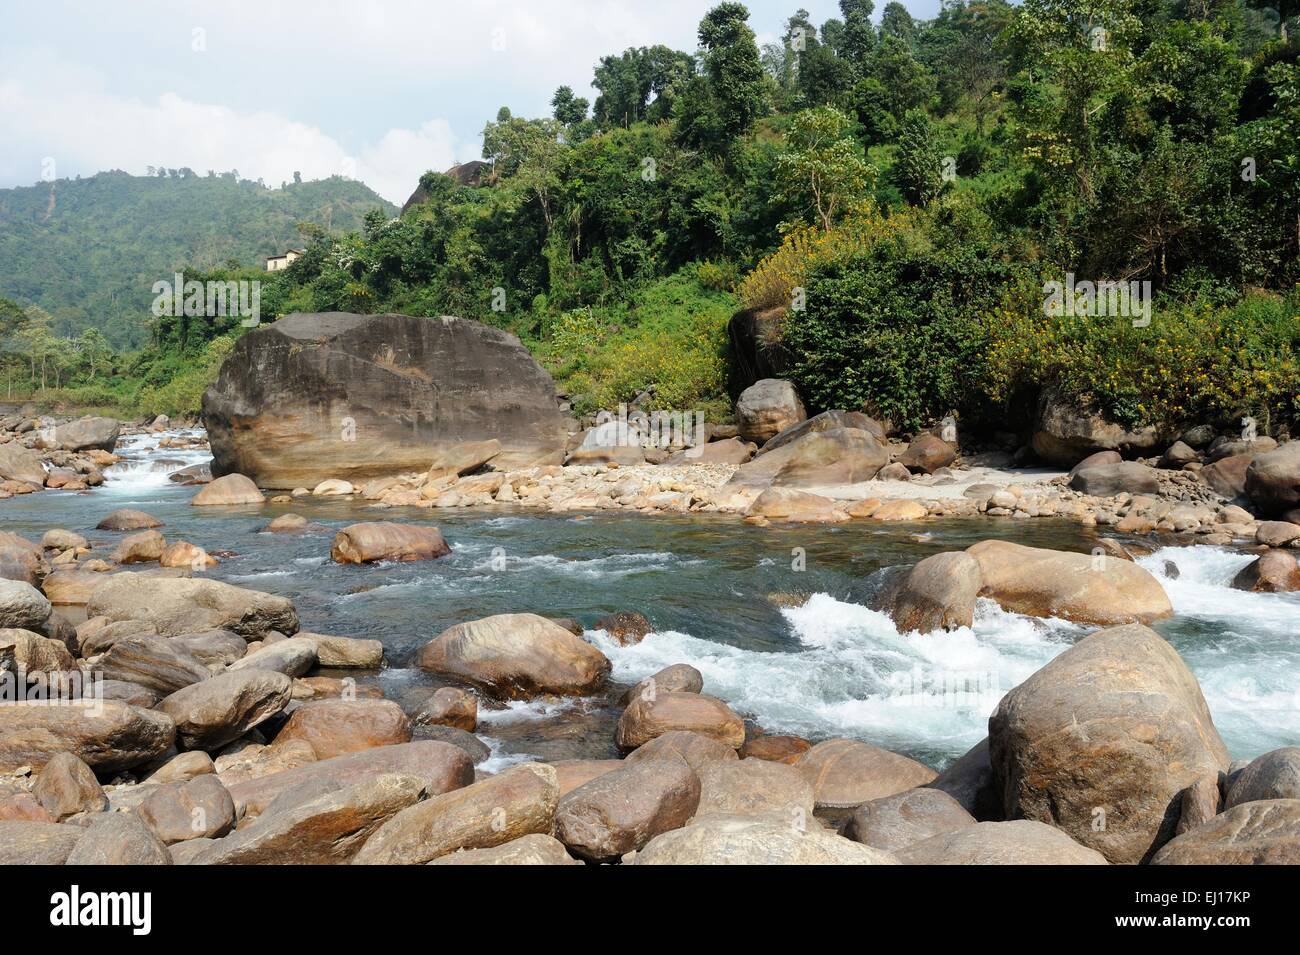 River Jaldhaka with rocks, West Bengal, India Stock Photo